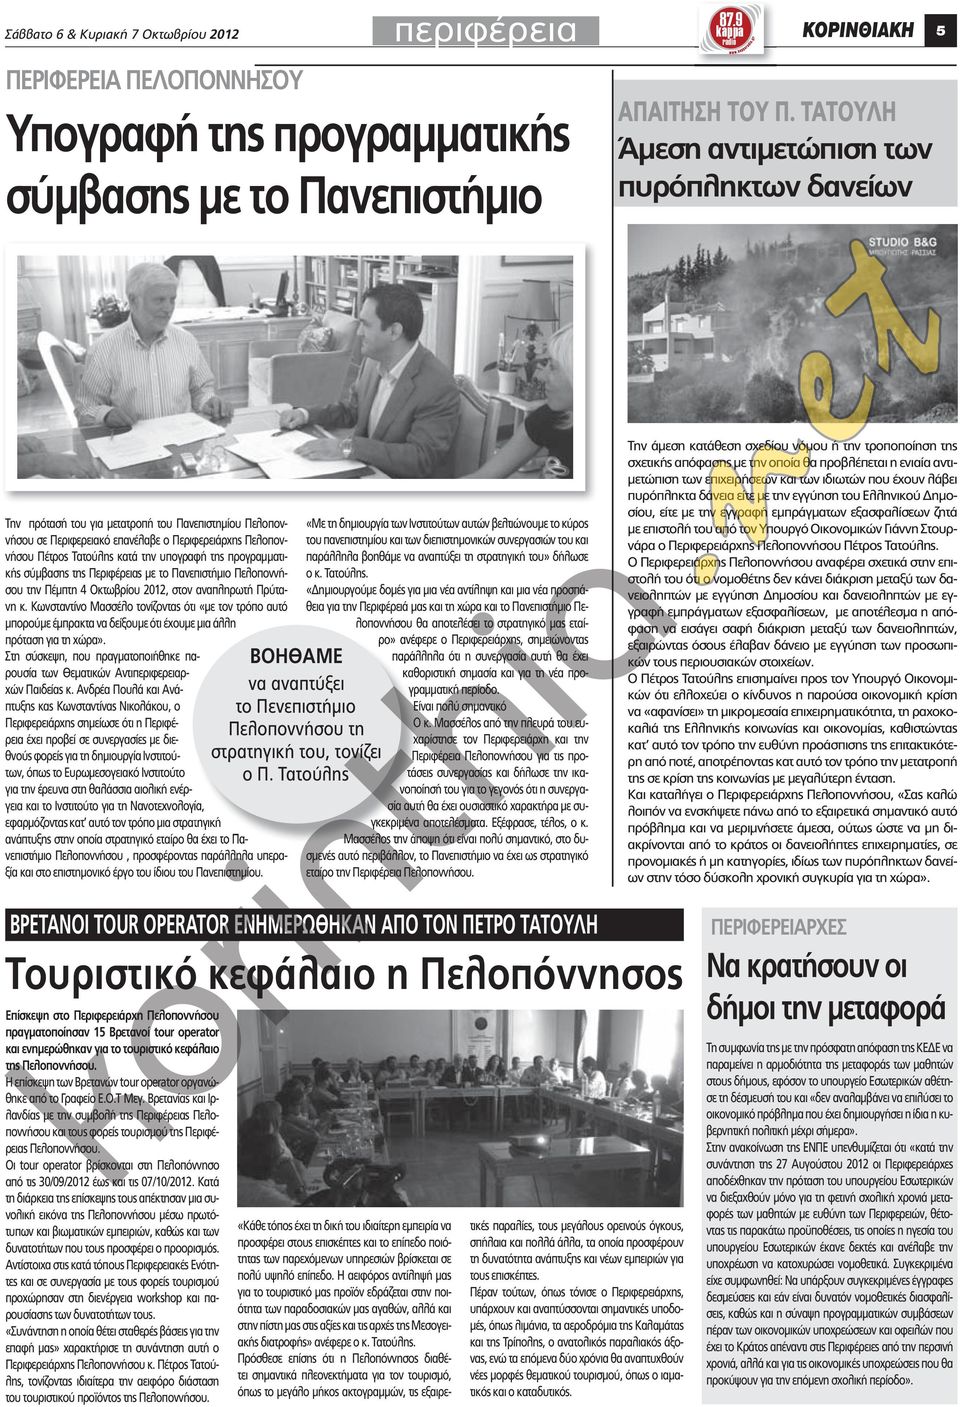 υπογραφή της προγραμματικής σύμβασης της Περιφέρειας με το Πανεπιστήμιο Πελοποννήσου την Πέμπτη 4 Οκτωβρίου 2012, στον αναπληρωτή Πρύτανη κ.